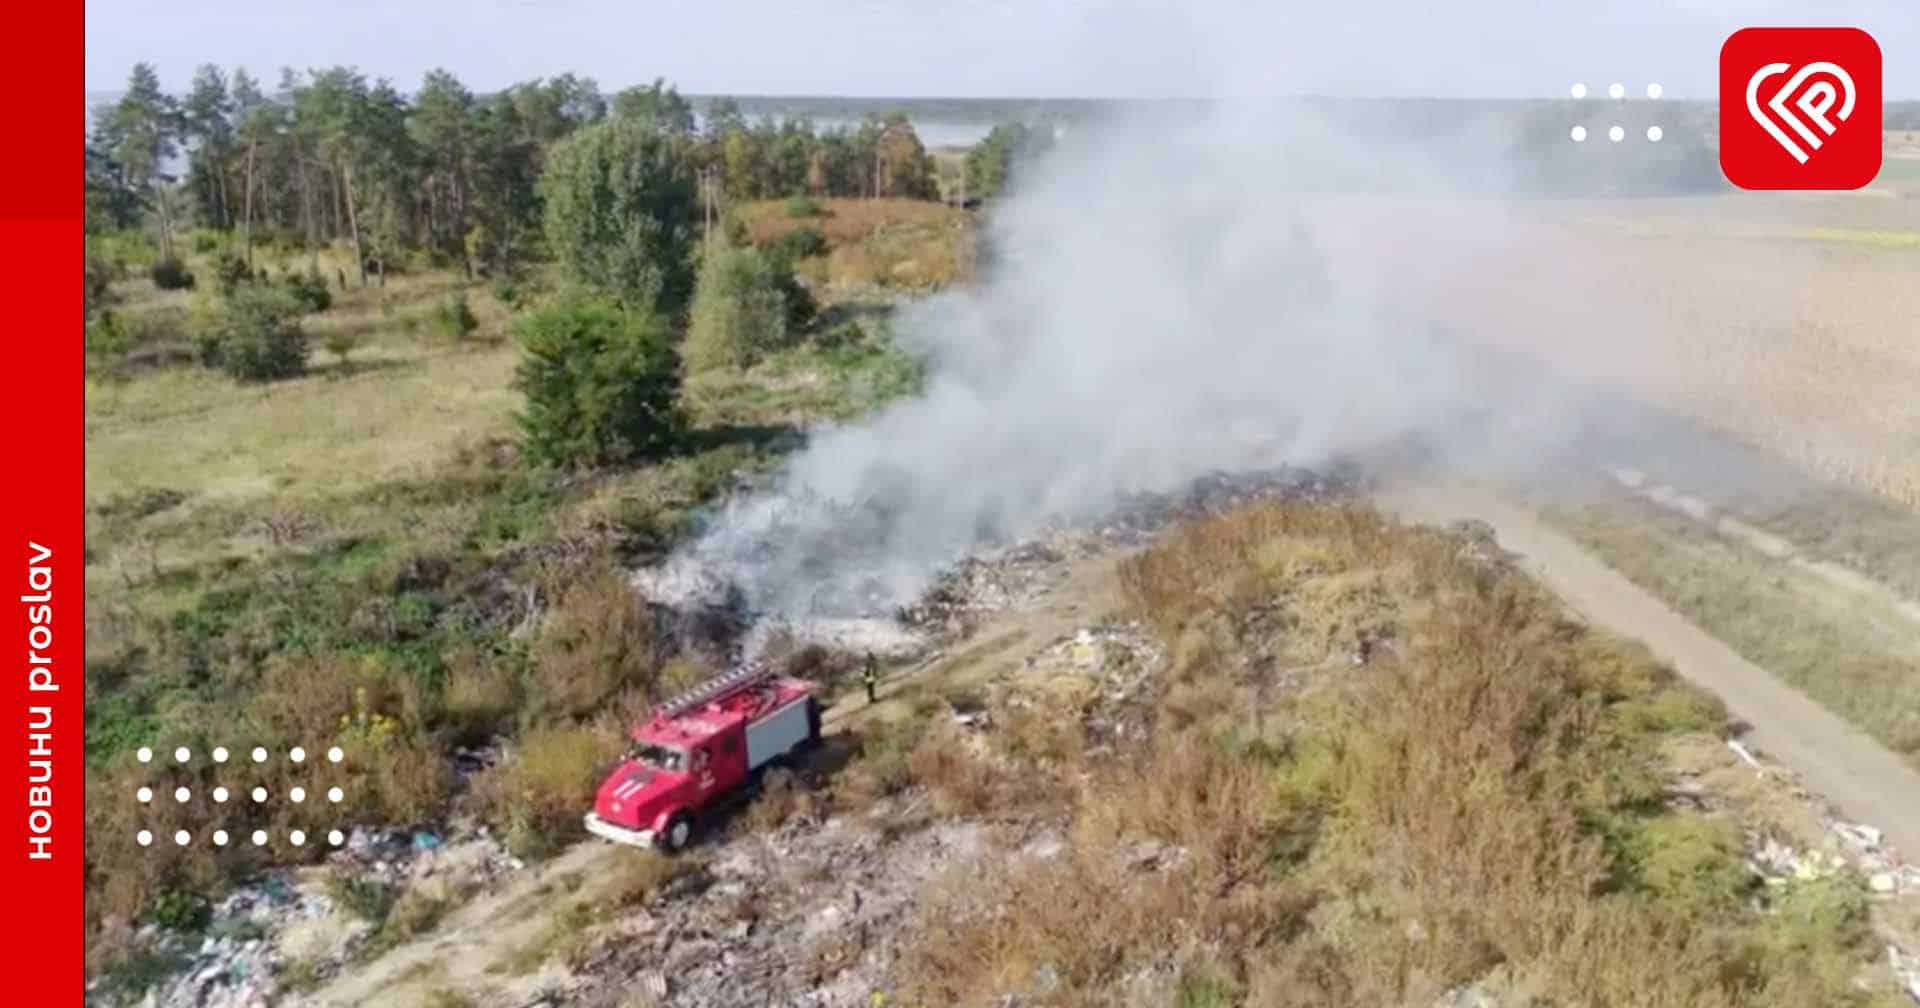 У Циблях рятувальники гасили пожежу близько п’яти годин: фото та відео з місця загорання